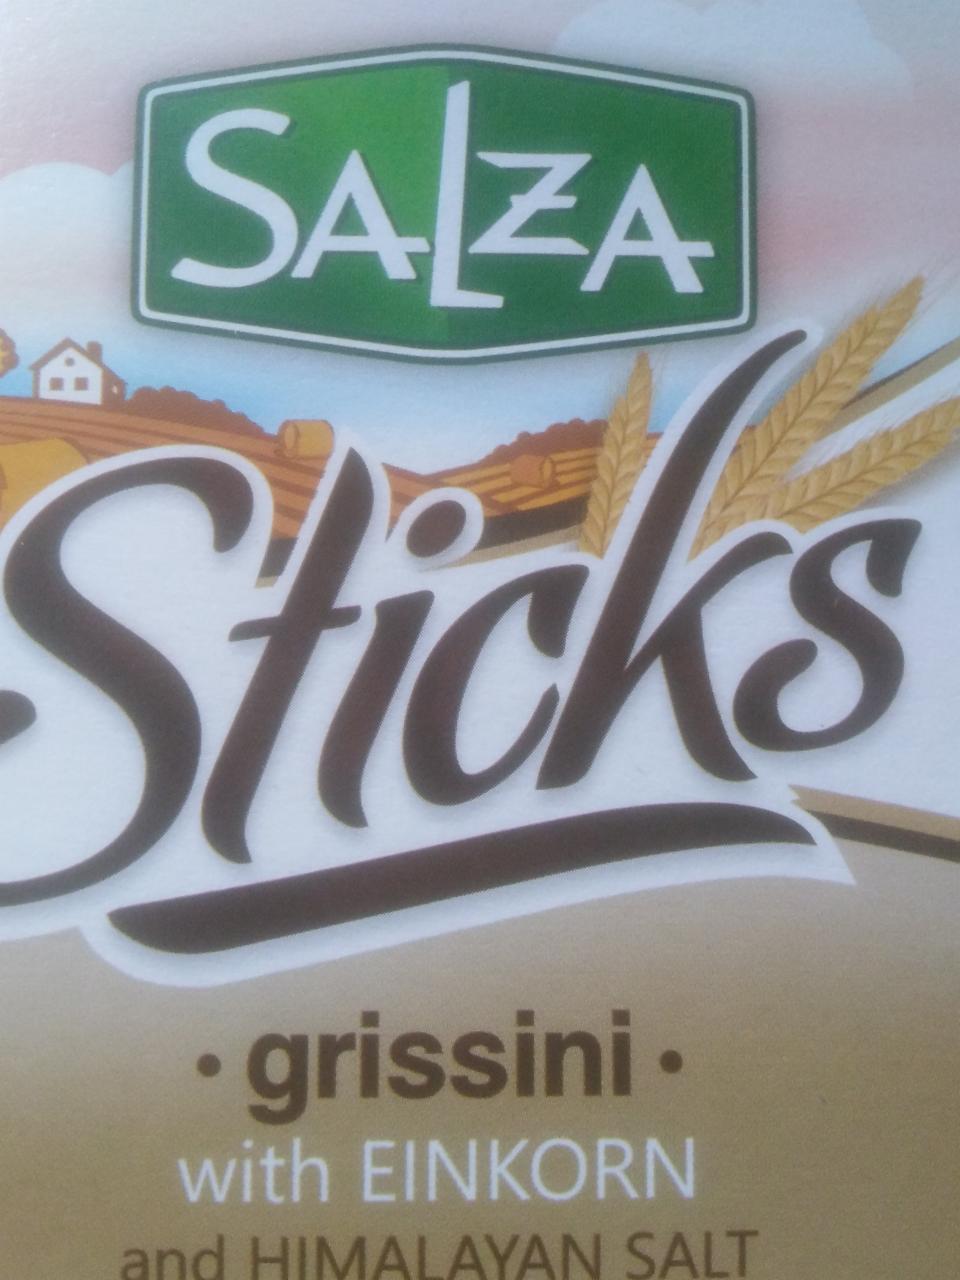 Фото - Sticks einkorn and himalayan salt salza Salza